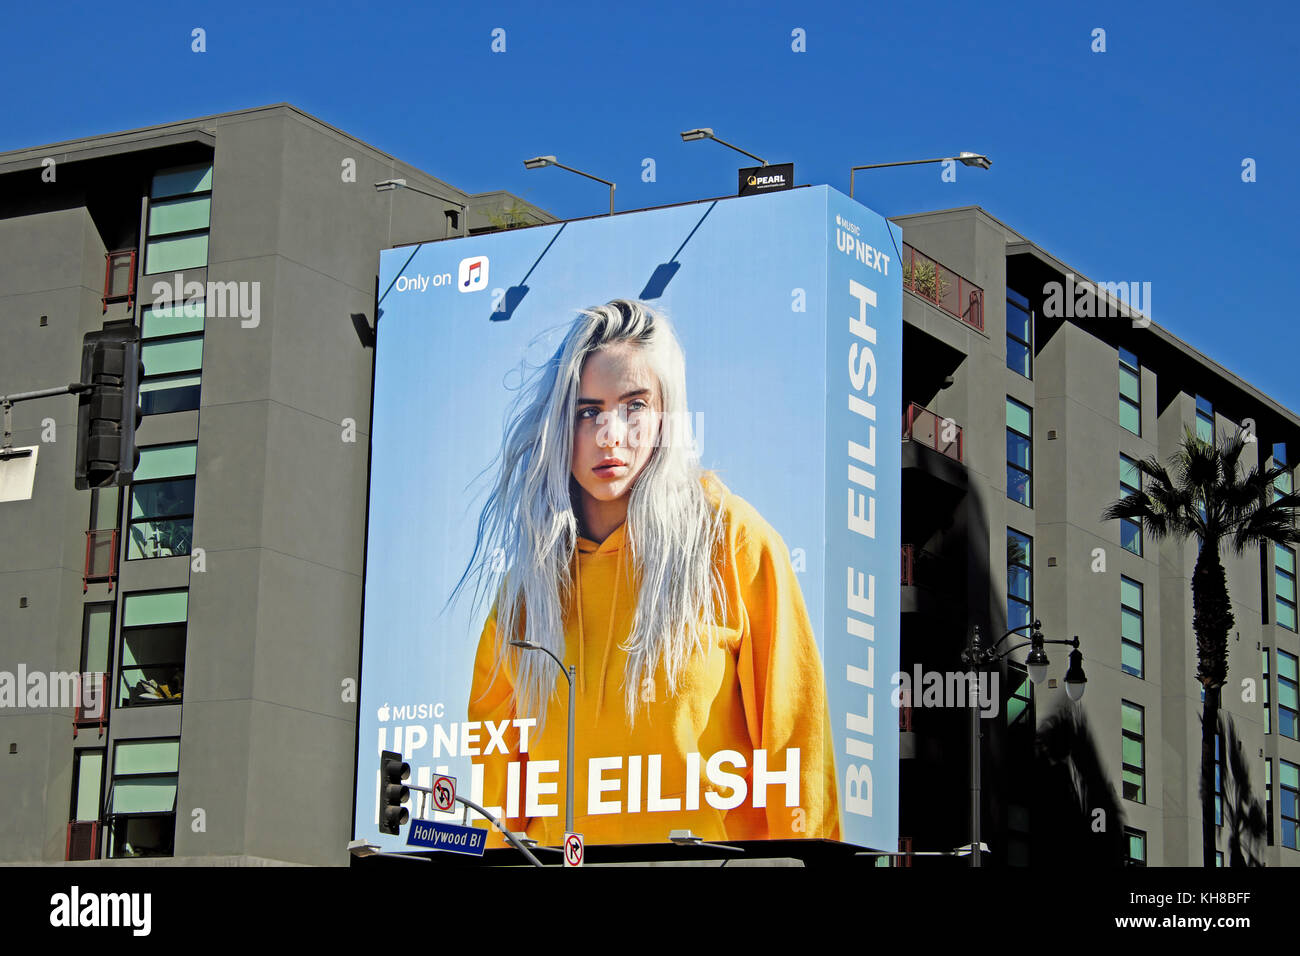 Apple Musik oben Weiter Billie Eilish portrait Werbung Plakat auf Seite des Hollywood Boulevard Gebäude 2017 Los Angeles Kalifornien KATHY DEWITT Stockfoto